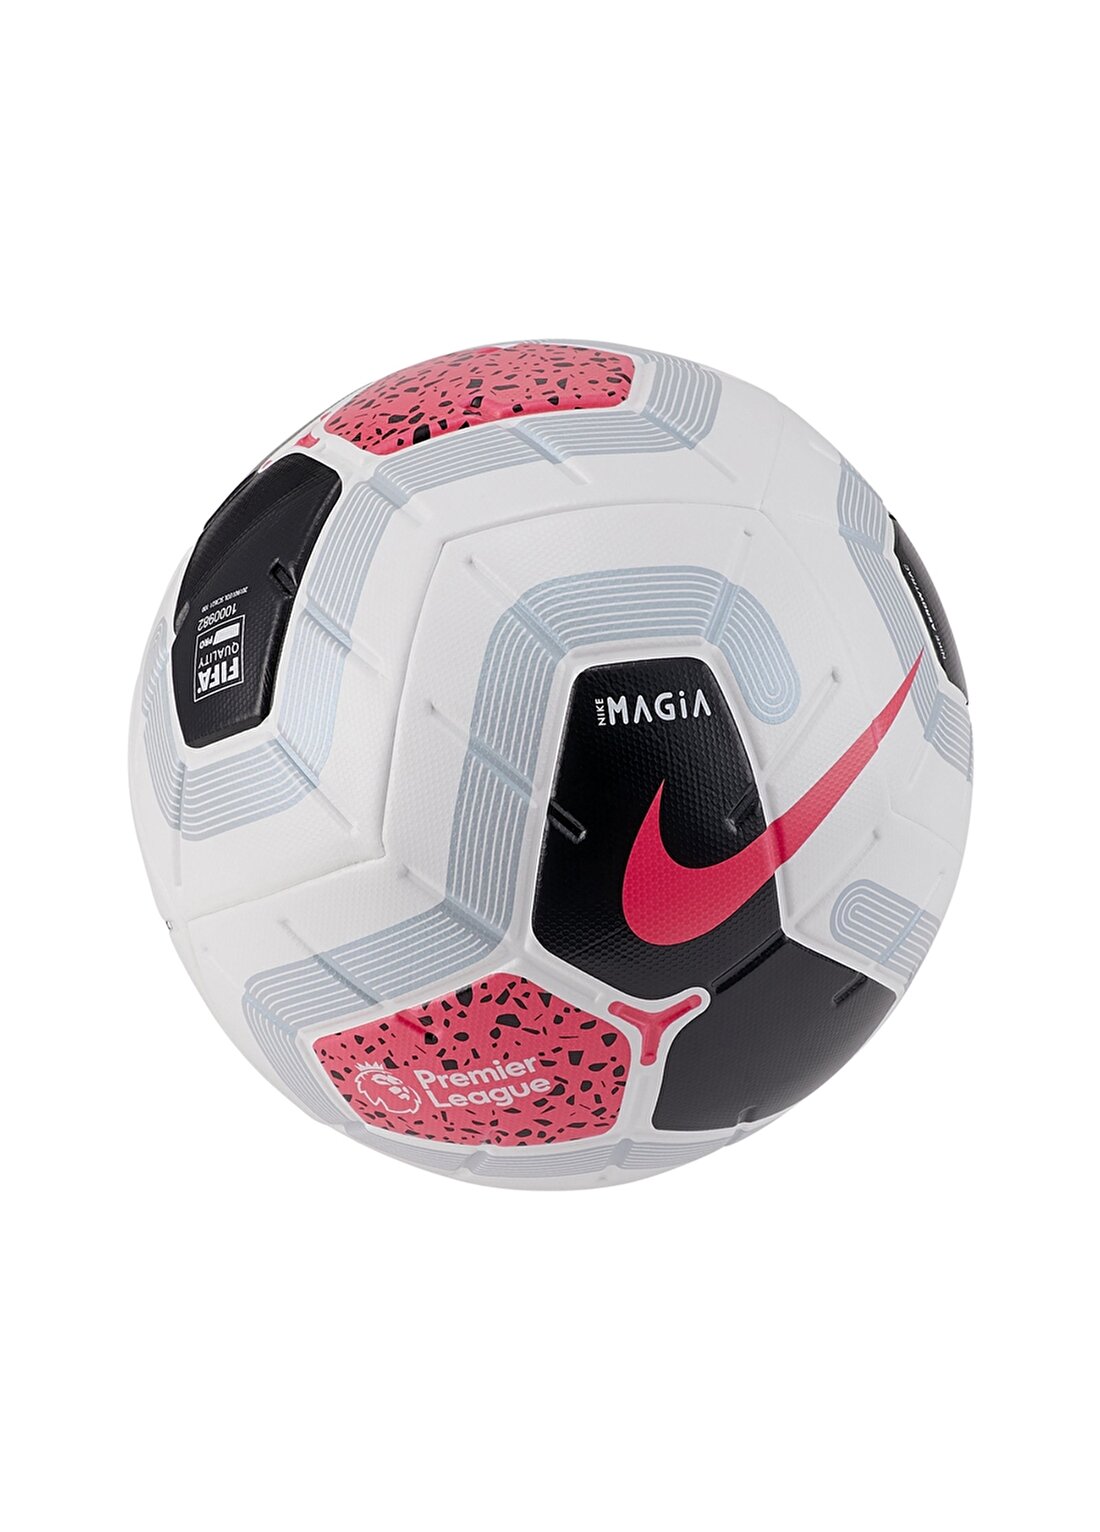 Nike English Premier League Magia Futbol Topu